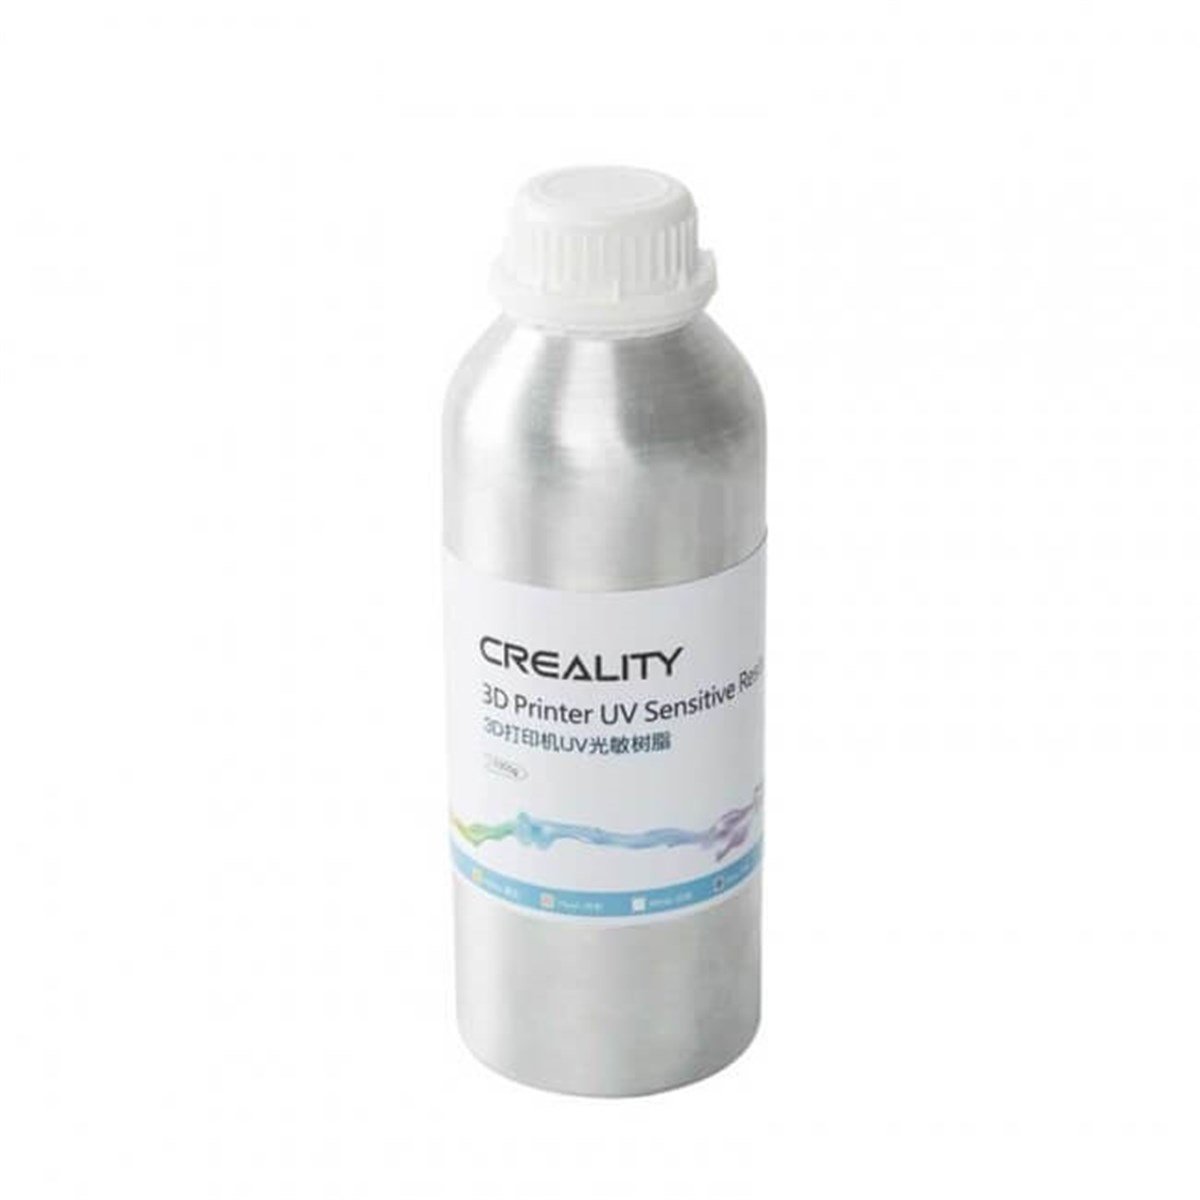 Creality Ten Rengi UV Reçine 1 Kg - SLA